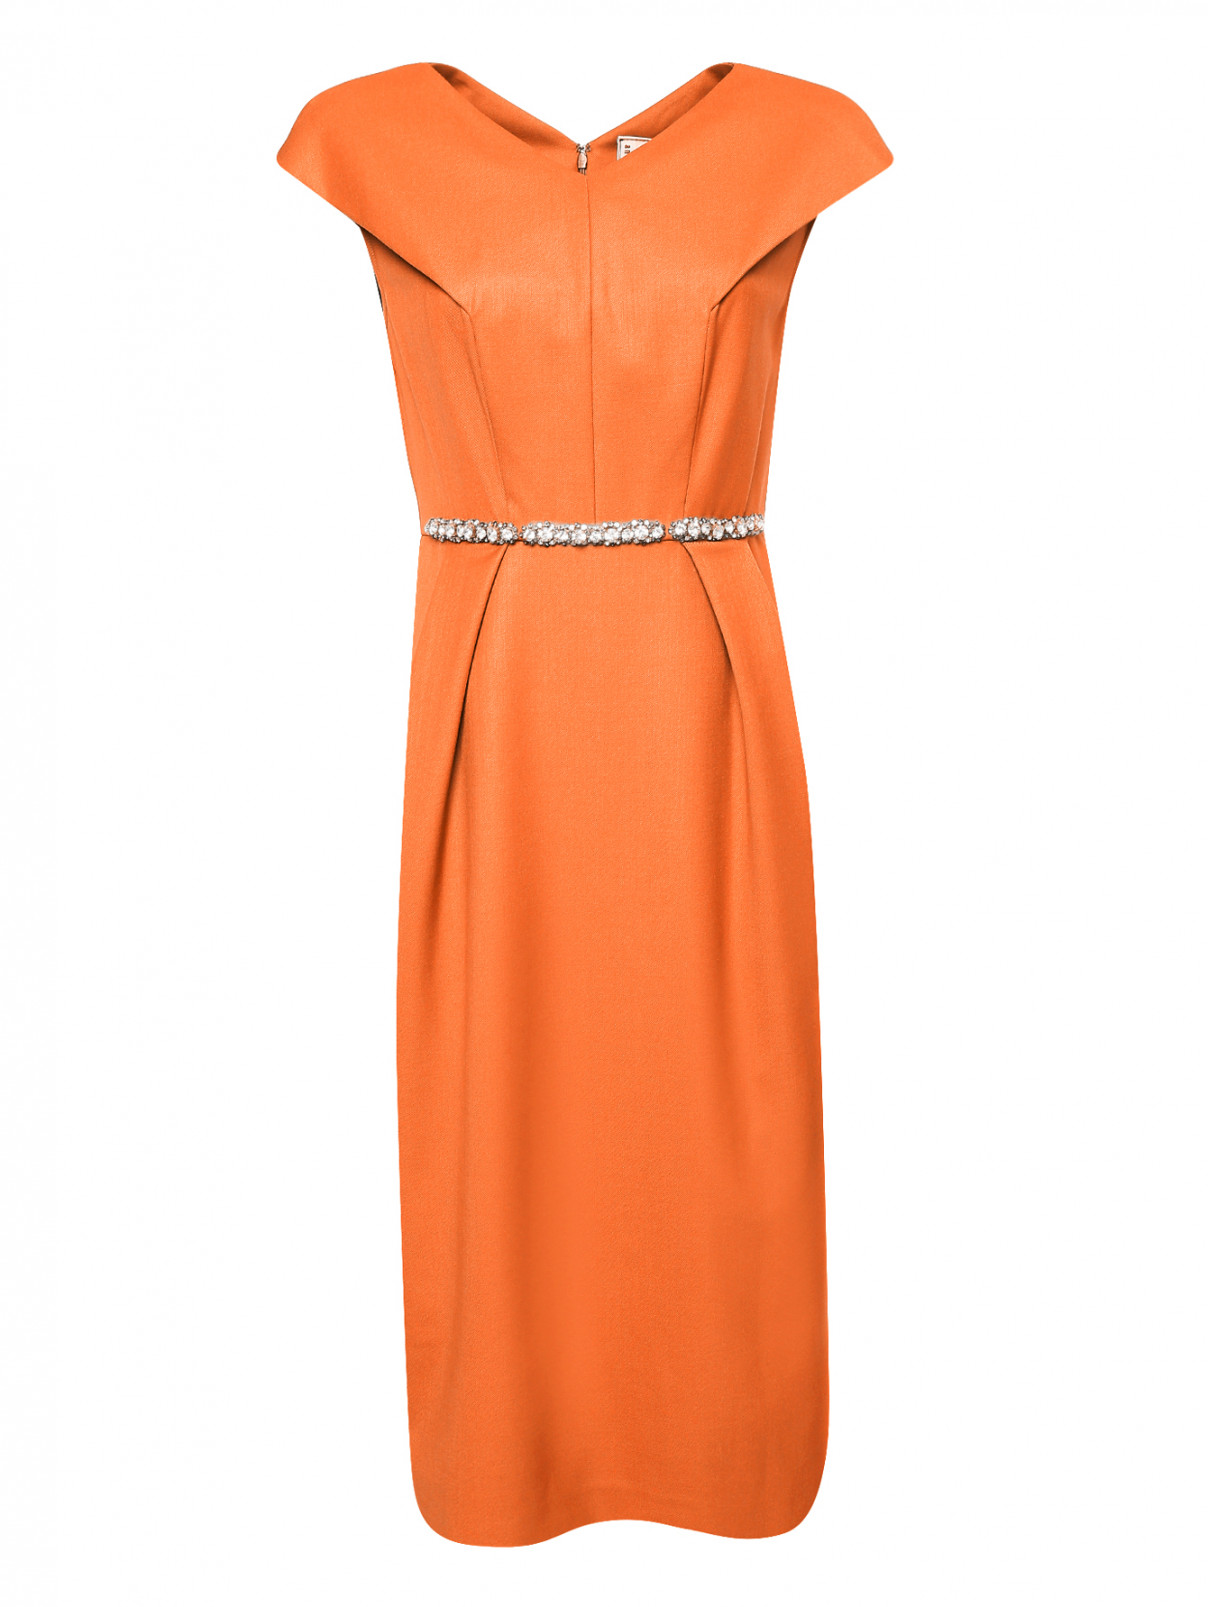 Платье-футляр из шерсти декорированное кристаллами Antonio Marras  –  Общий вид  – Цвет:  Оранжевый